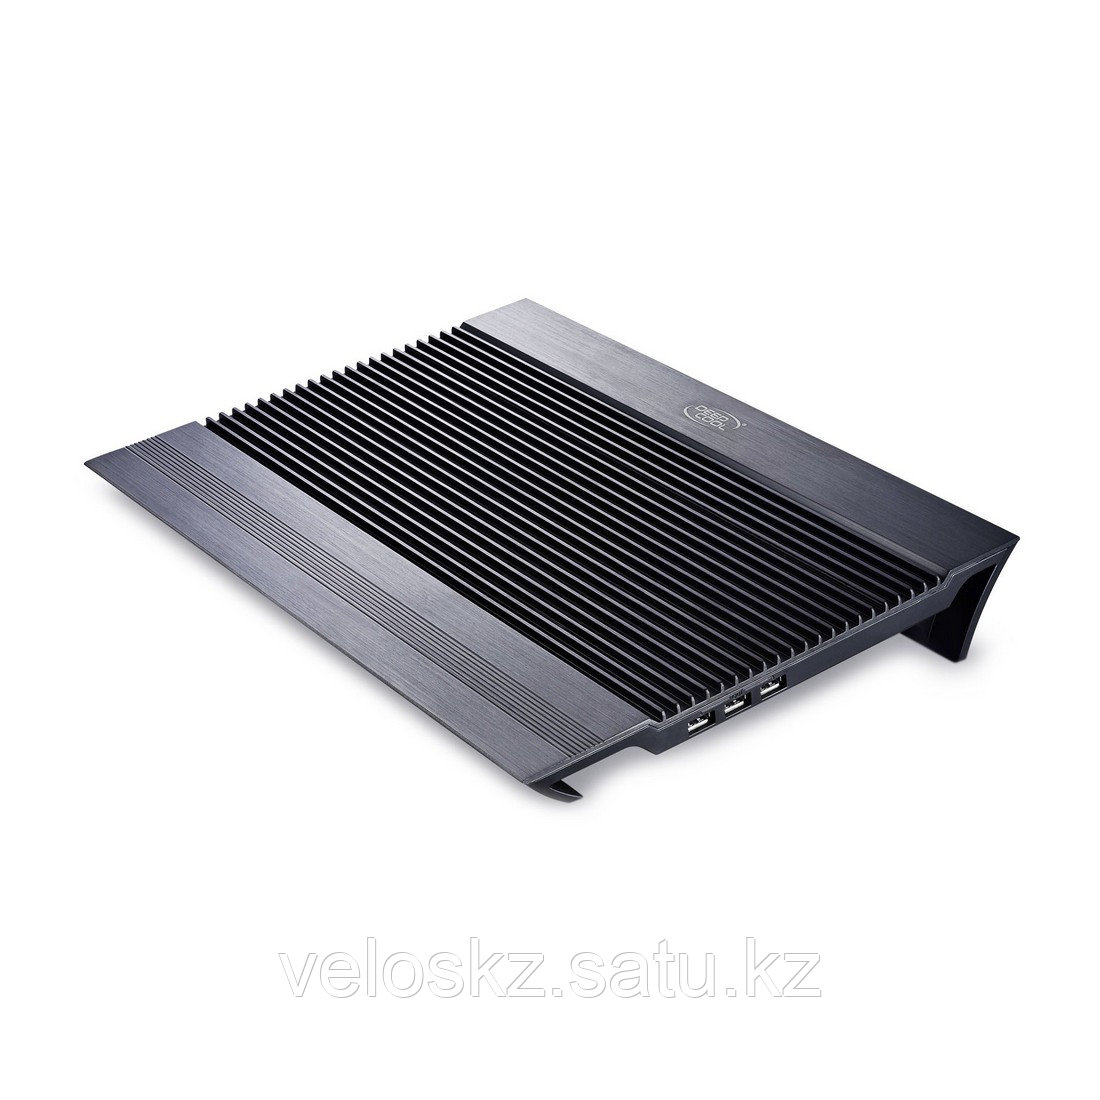 Deepcool Охлаждающая подставка для ноутбука Deepcool N8 Black 17"